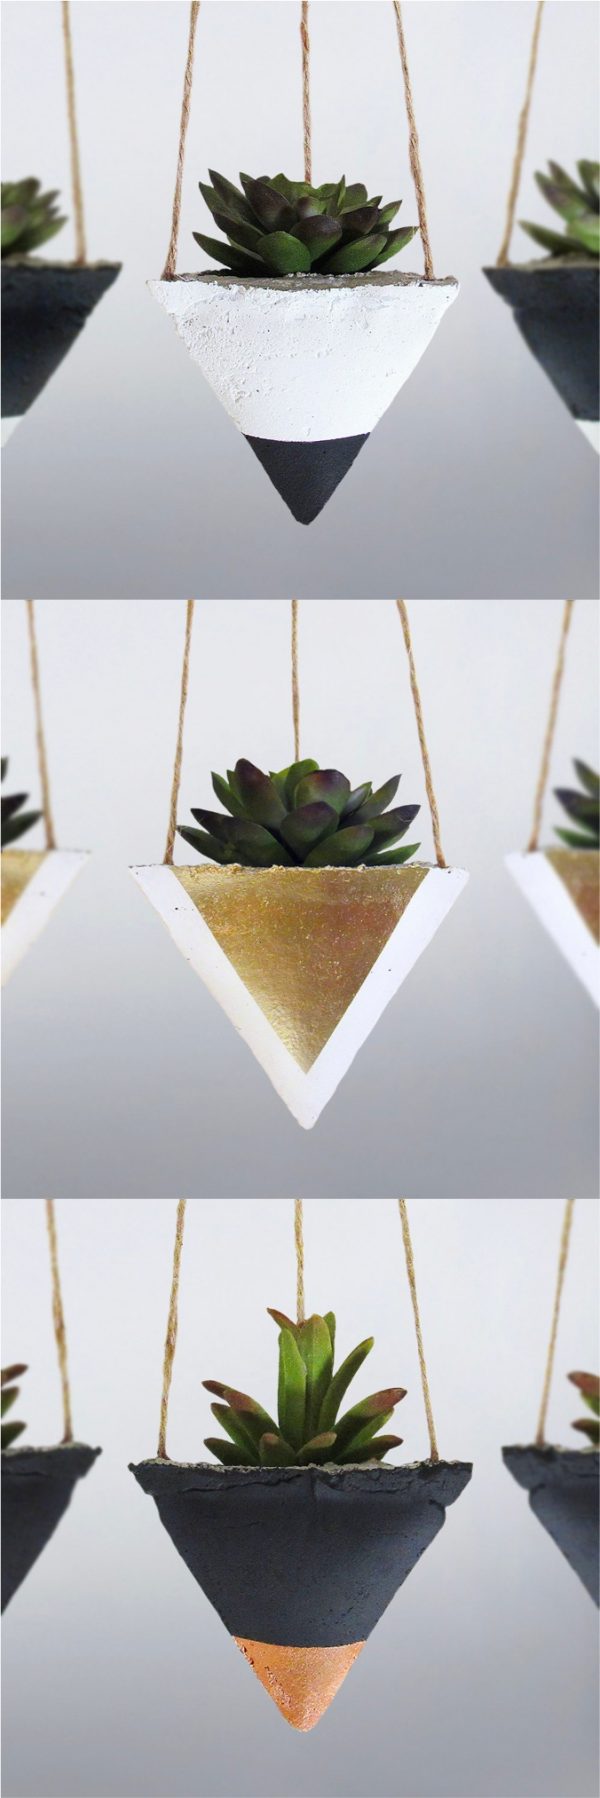 Handmade plant pot set for indoor plants Geometric concrete succulent planter set of 4 